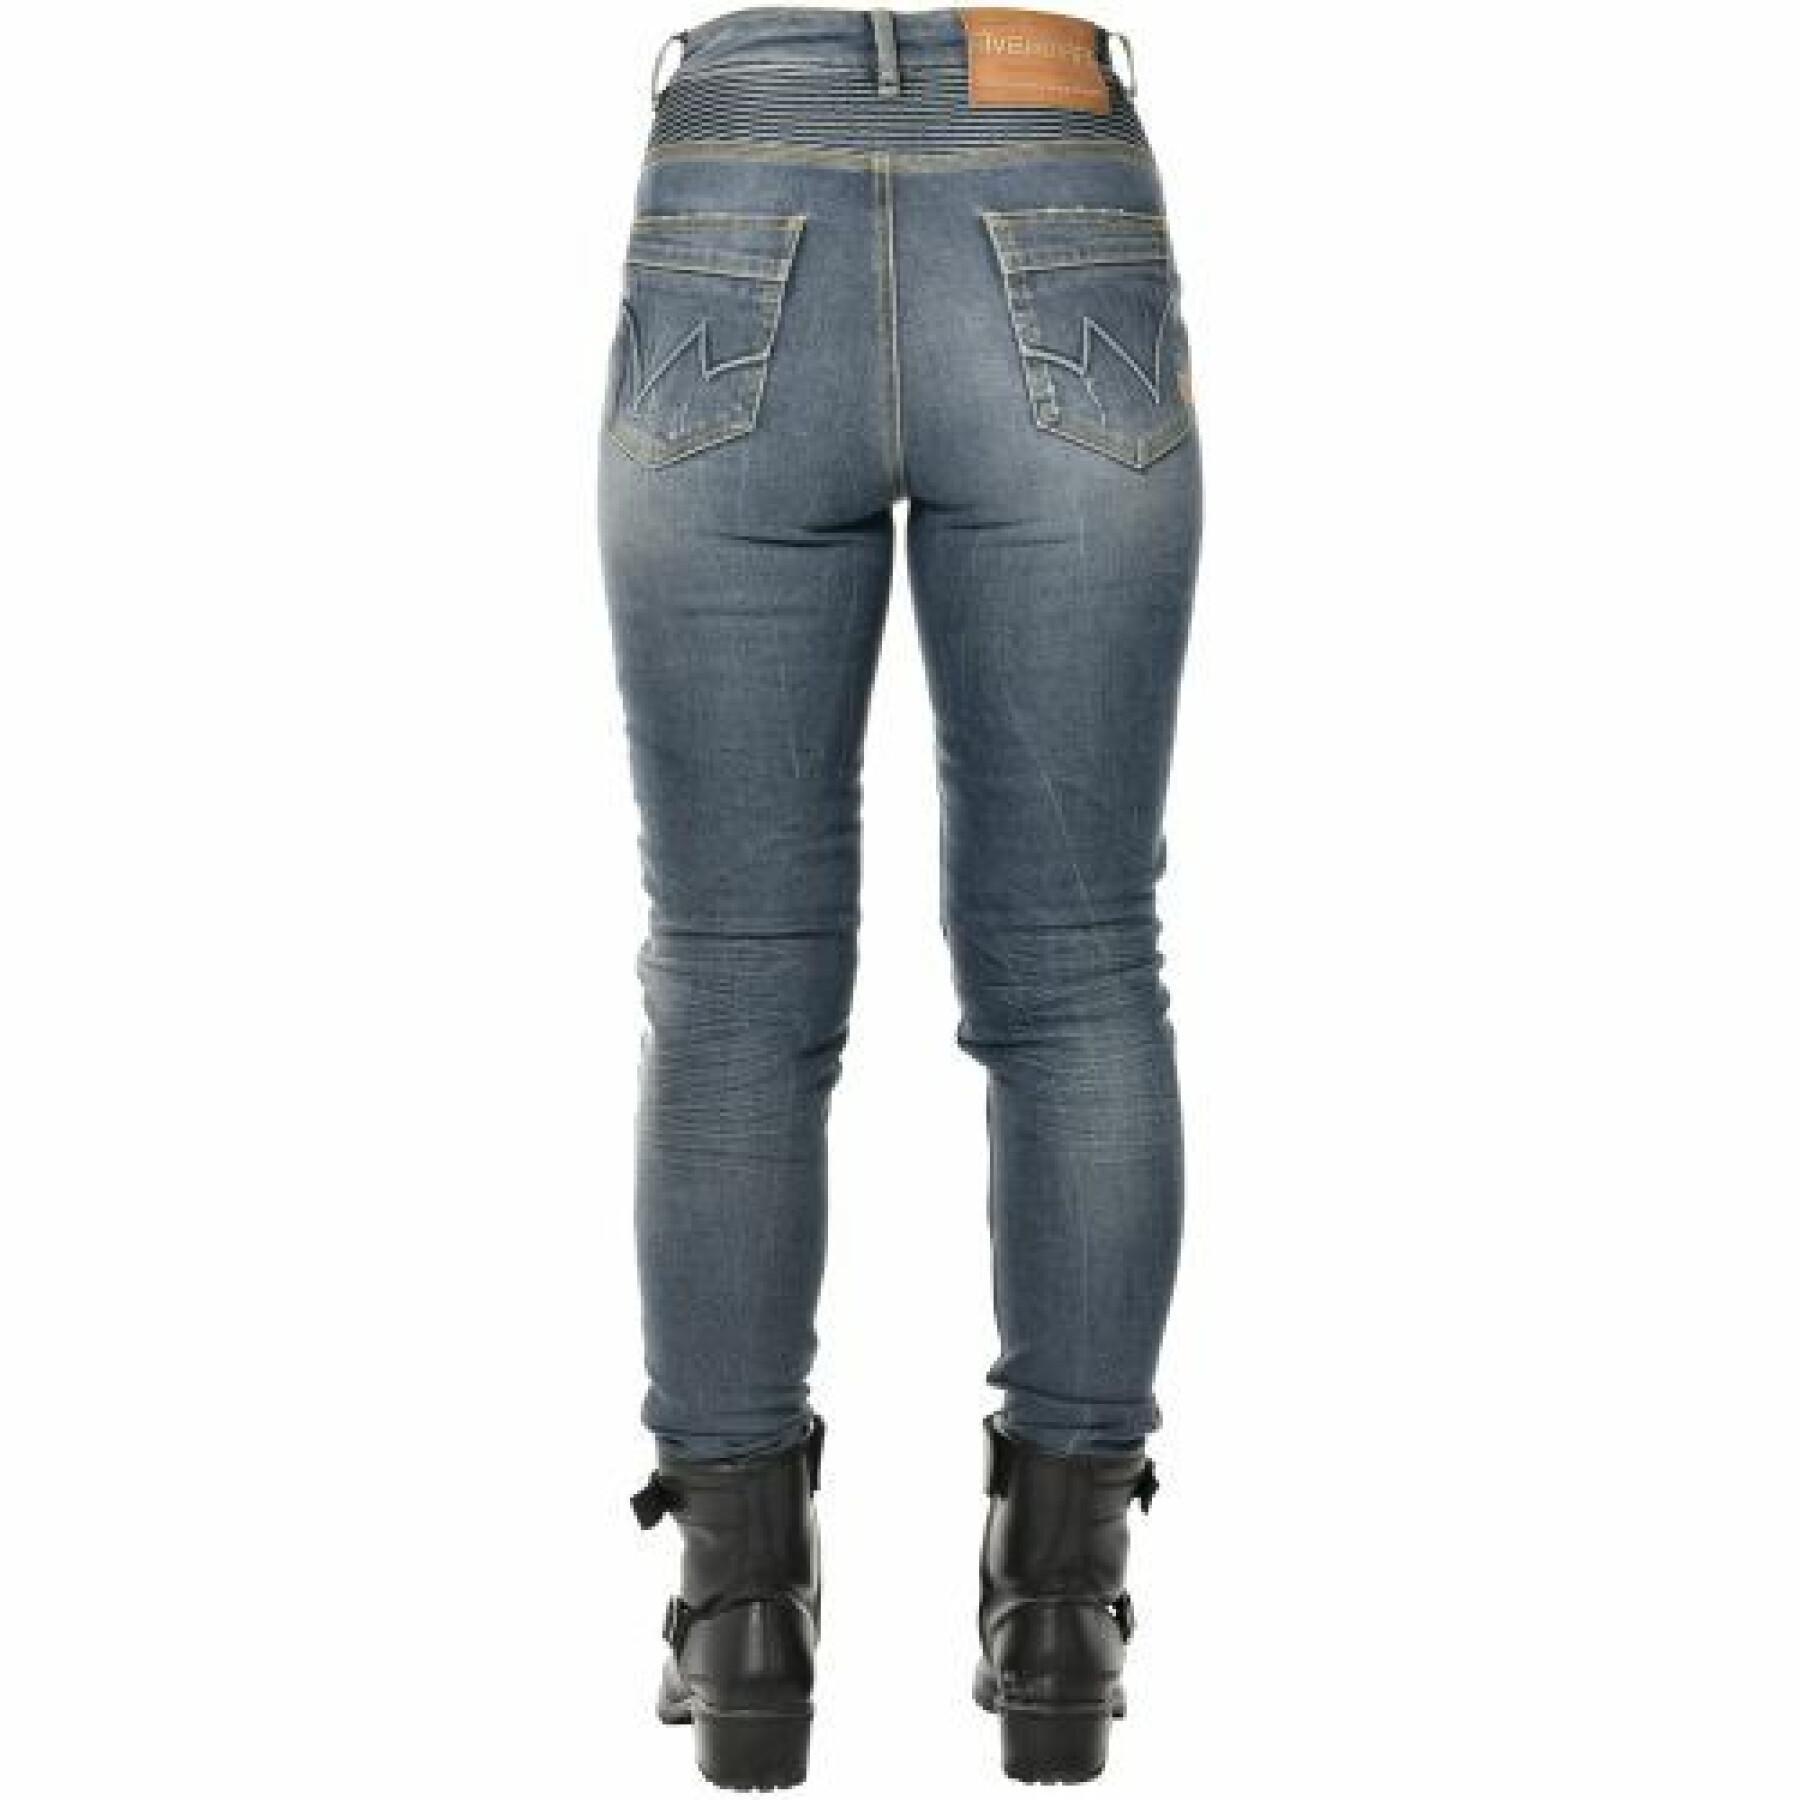 Motorrad-Jeans für Frauen Overlap Lexy